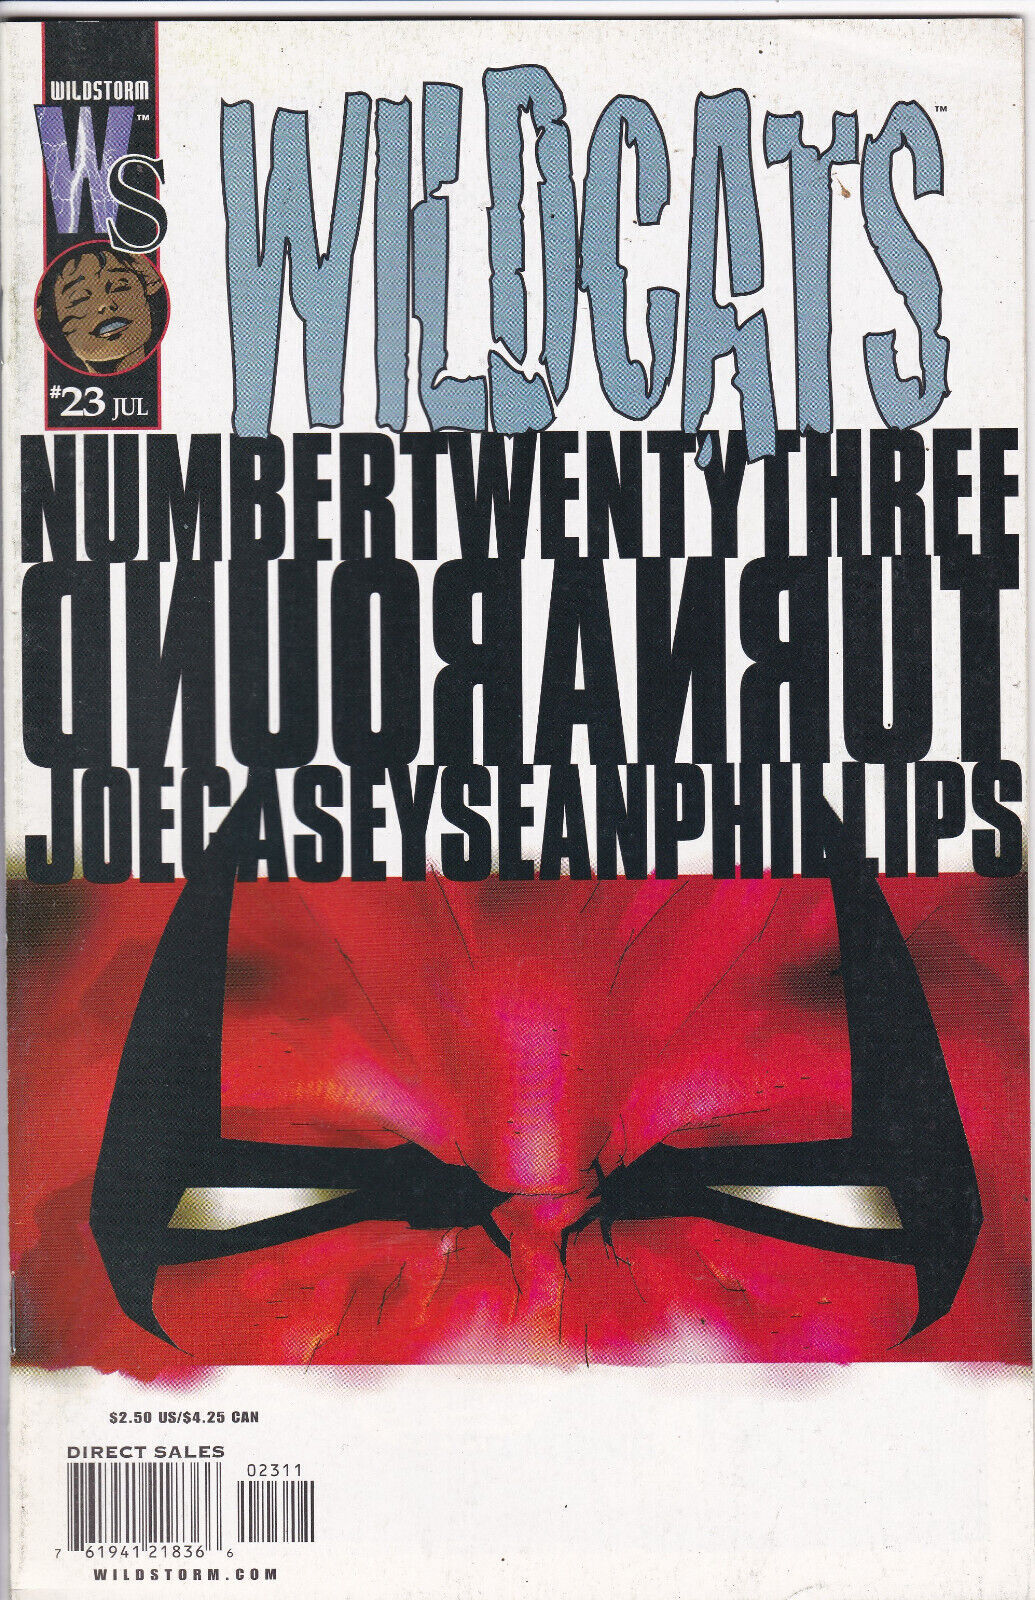 WildCats #23,  Vol. 1 (1999-2001) WildStorm Imprint of DC Comics